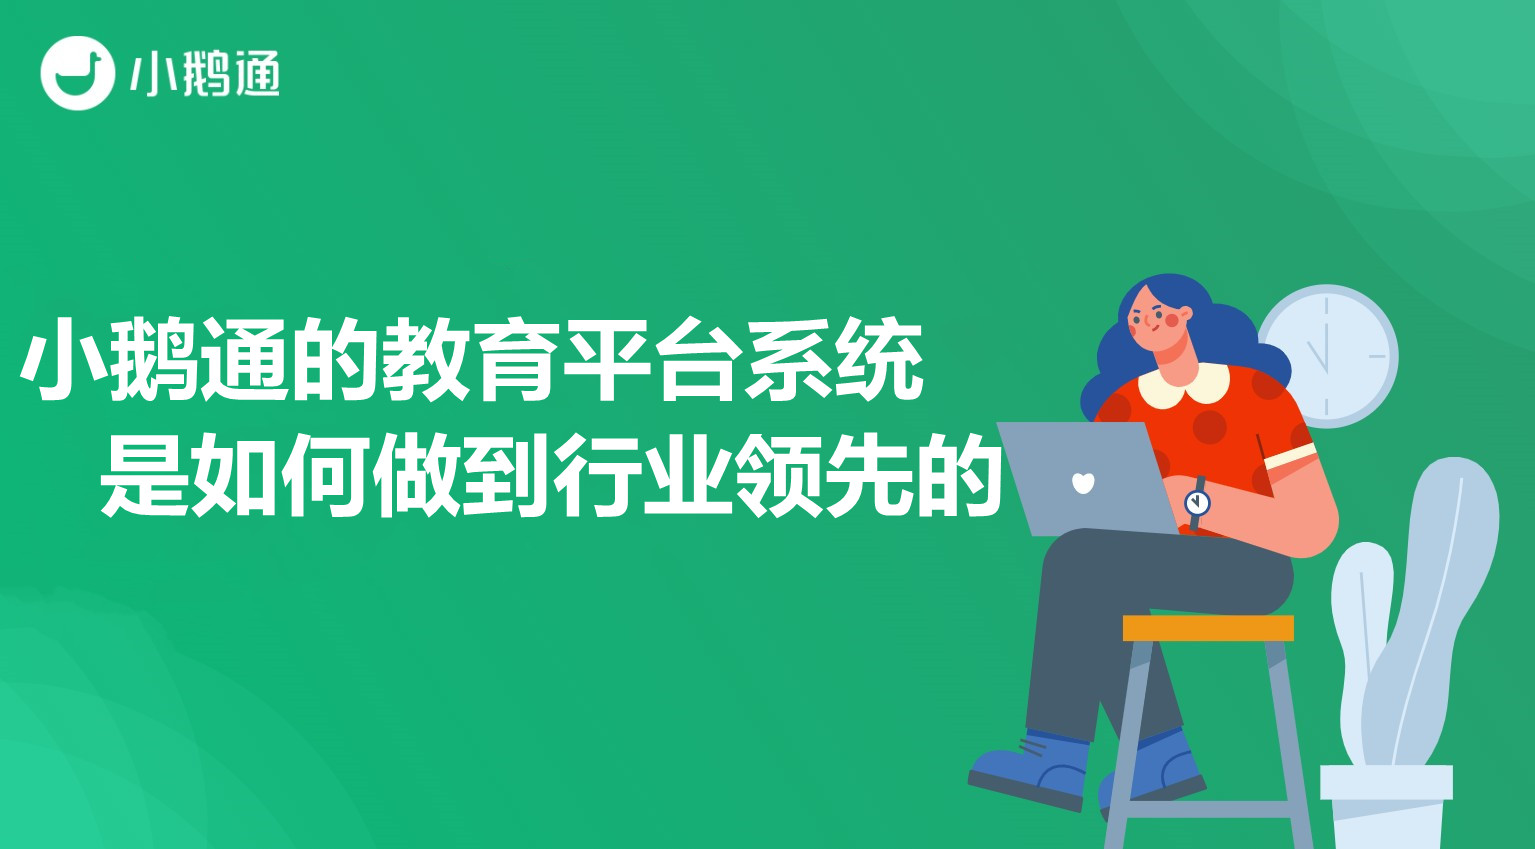 丹江口小鹅通的教育平台系统,是如何做到行业领先的